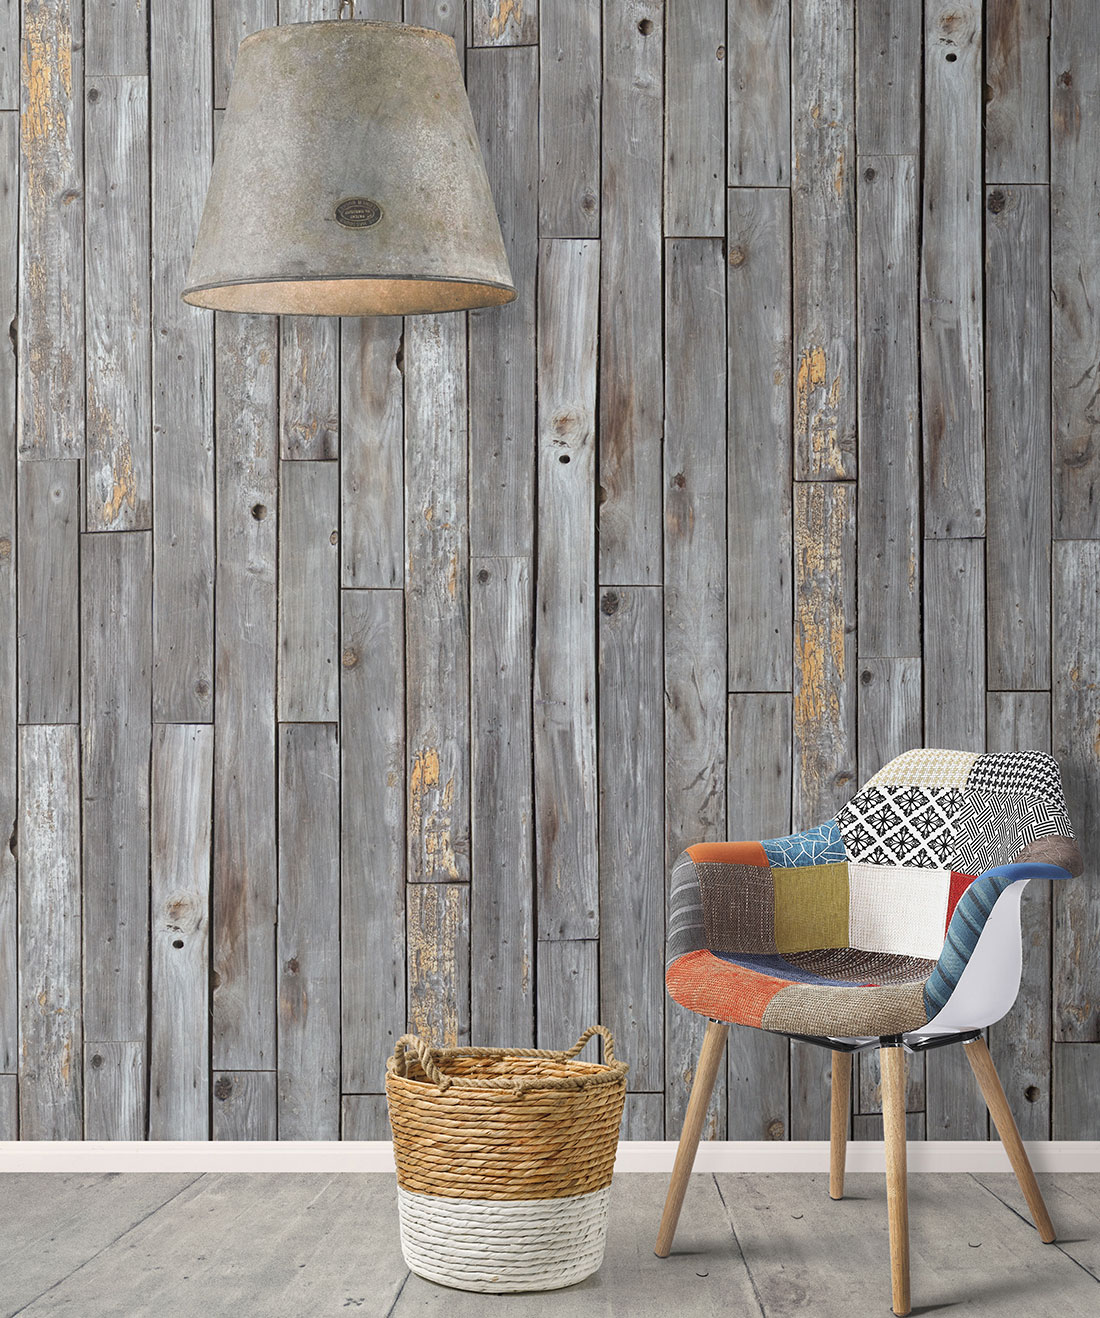 Design In Rustic Wood - HD Wallpaper 